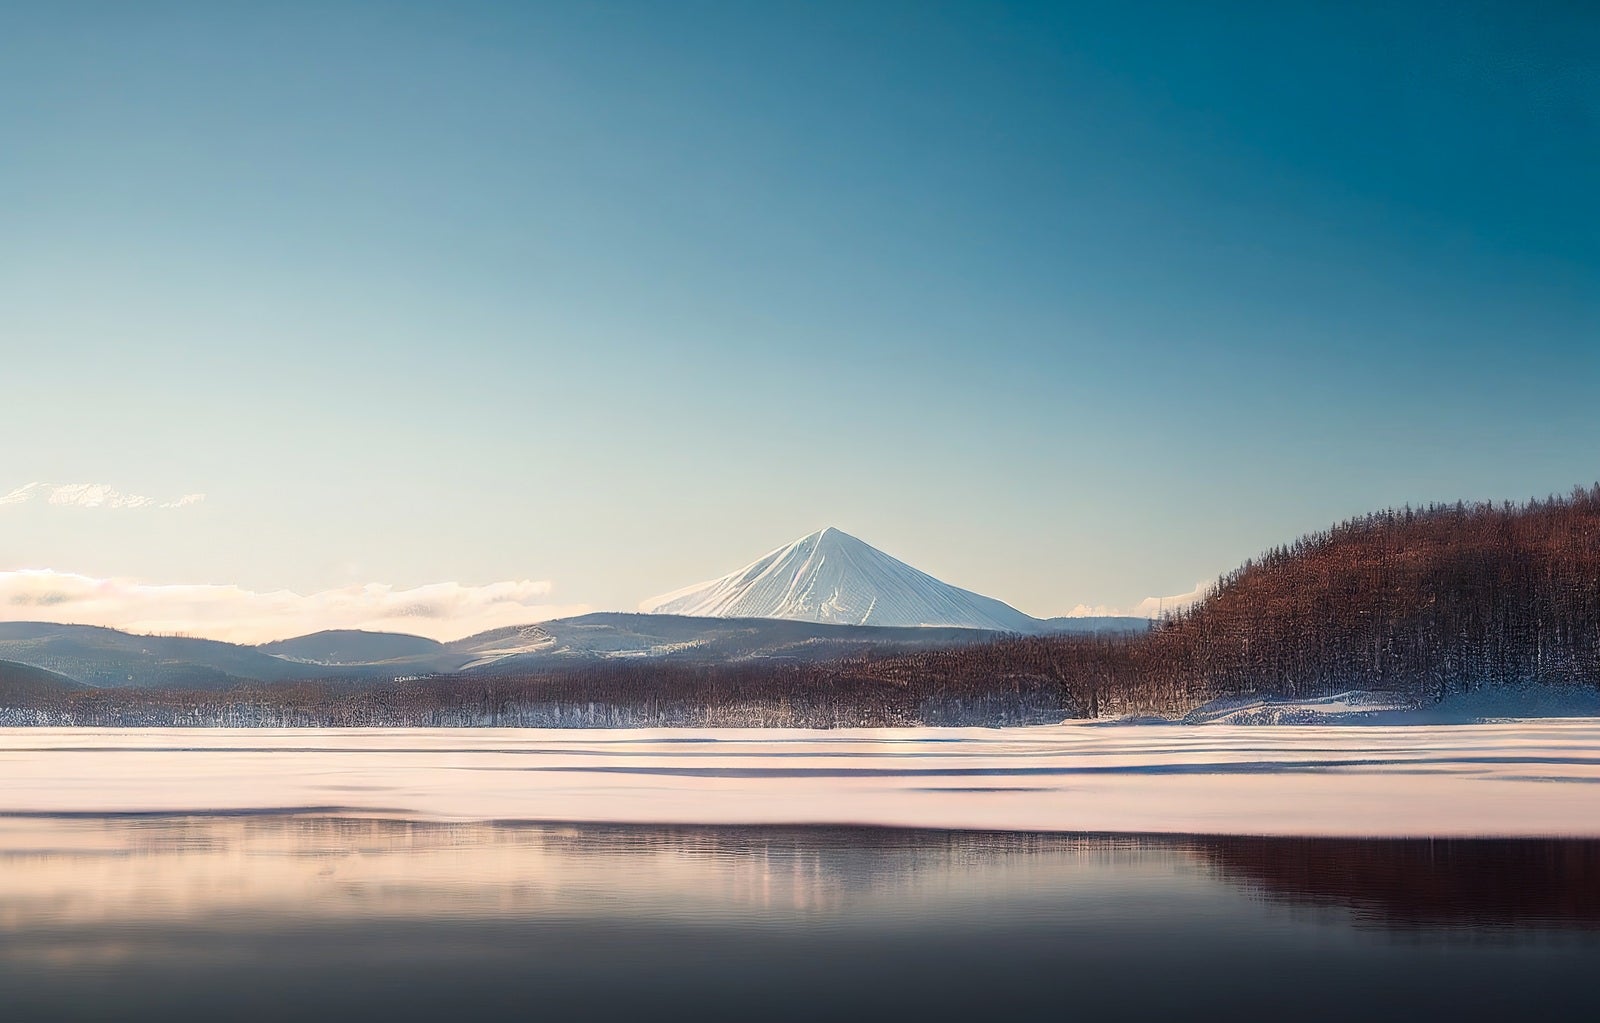 「静寂な冬の湖畔と雪山」の写真